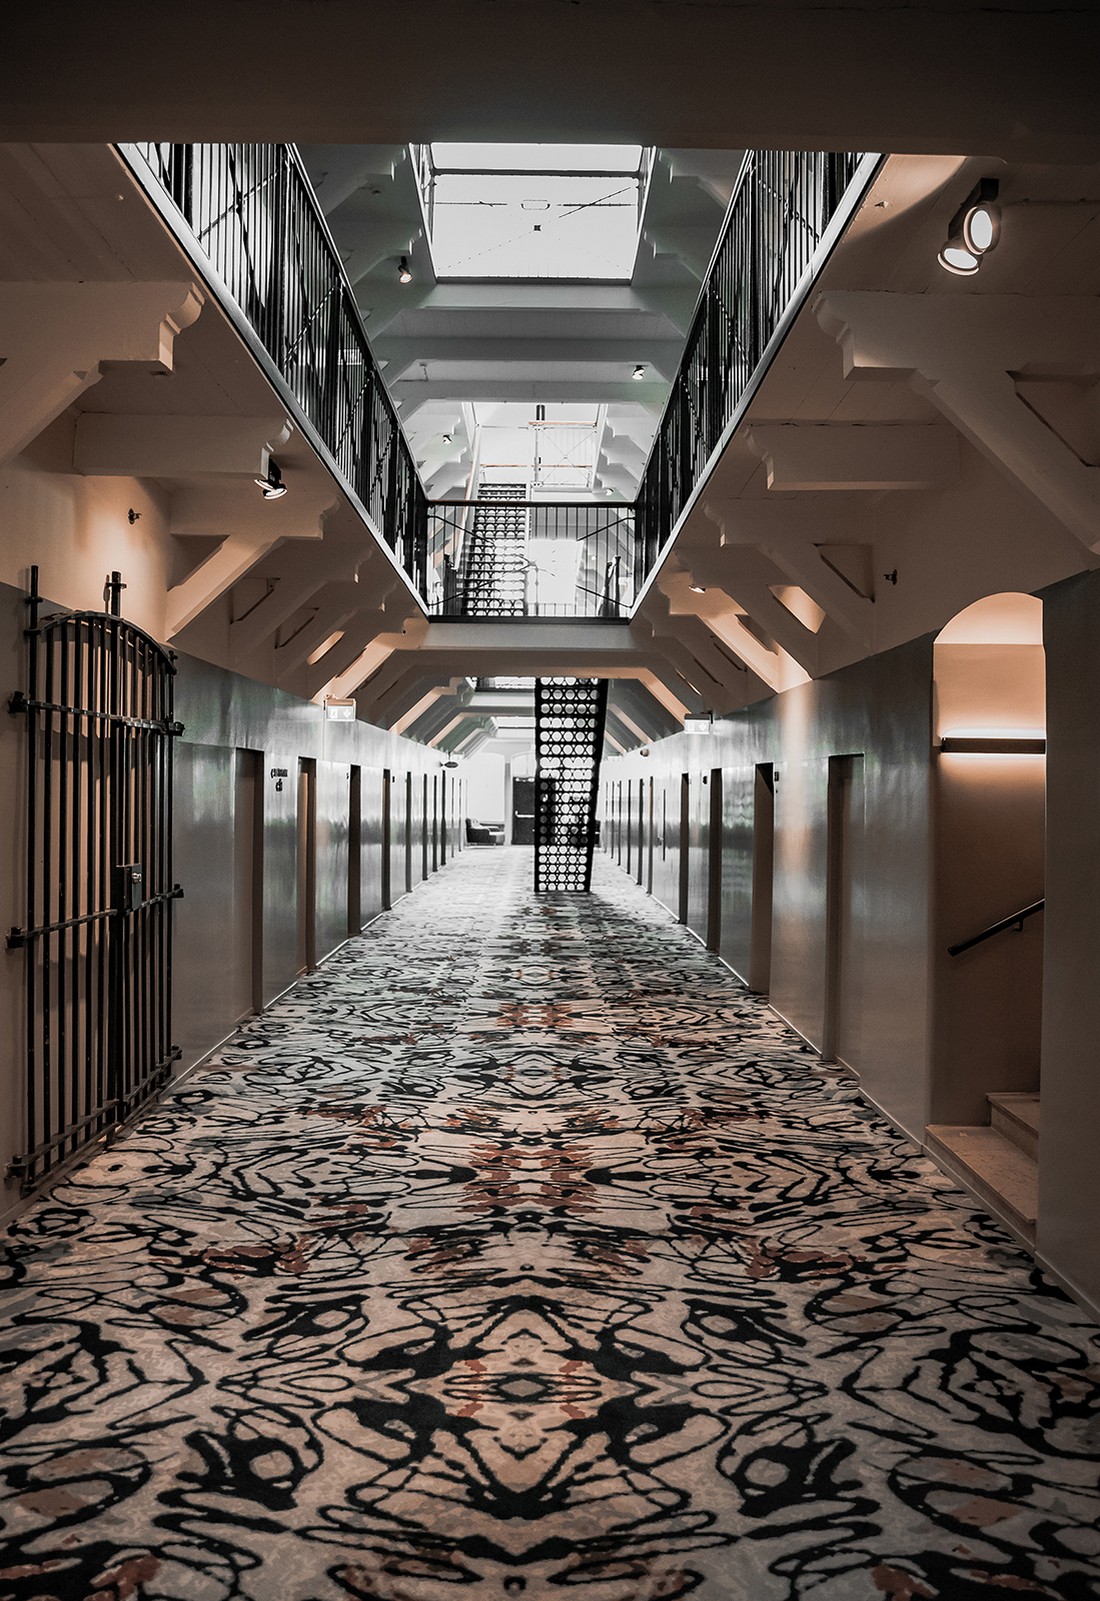 Уникальный отель-тюрьма в Хельсинки здании, время, тюрьму, заключенных, тюрьмы, которых, находится, которые, Katajanokka, отель, здания, настоящее, всего, котором, разнообразные, туристов, группы, клубы, организованные, интересам